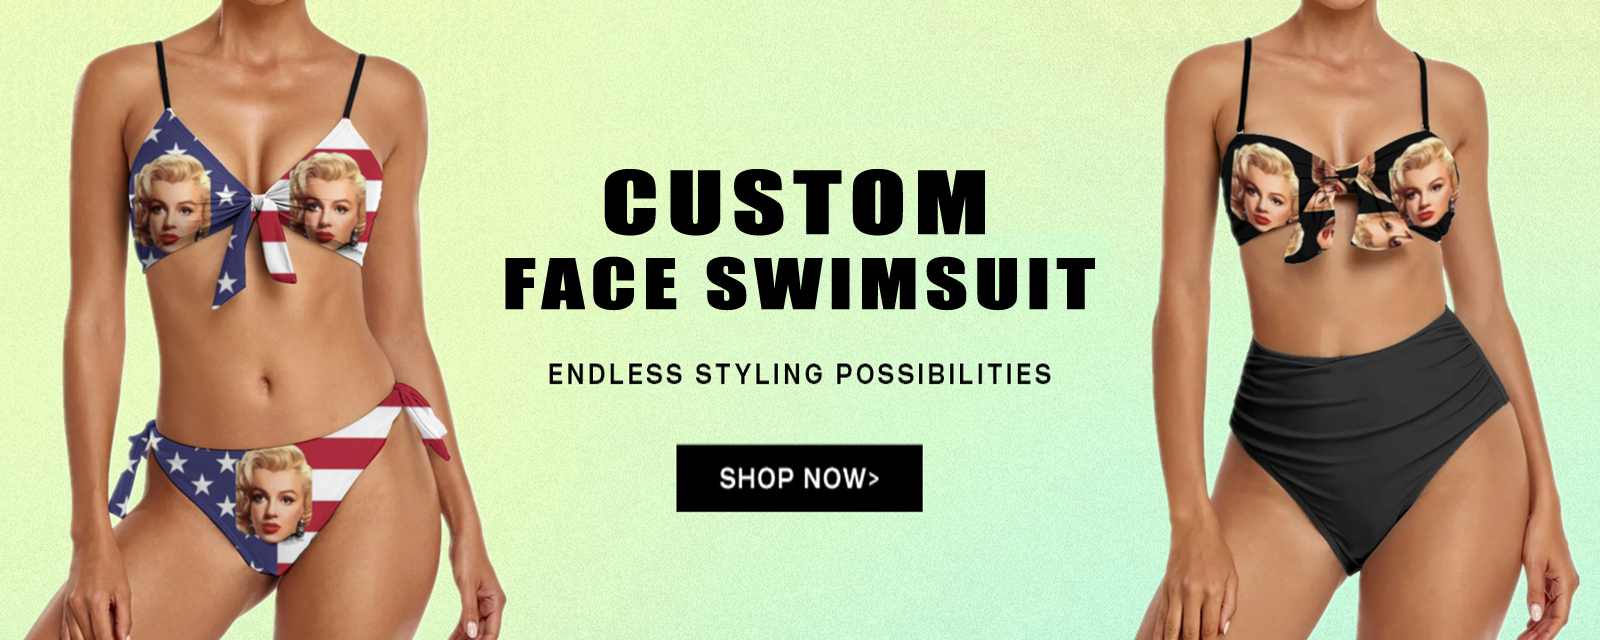 custom face swimsuit